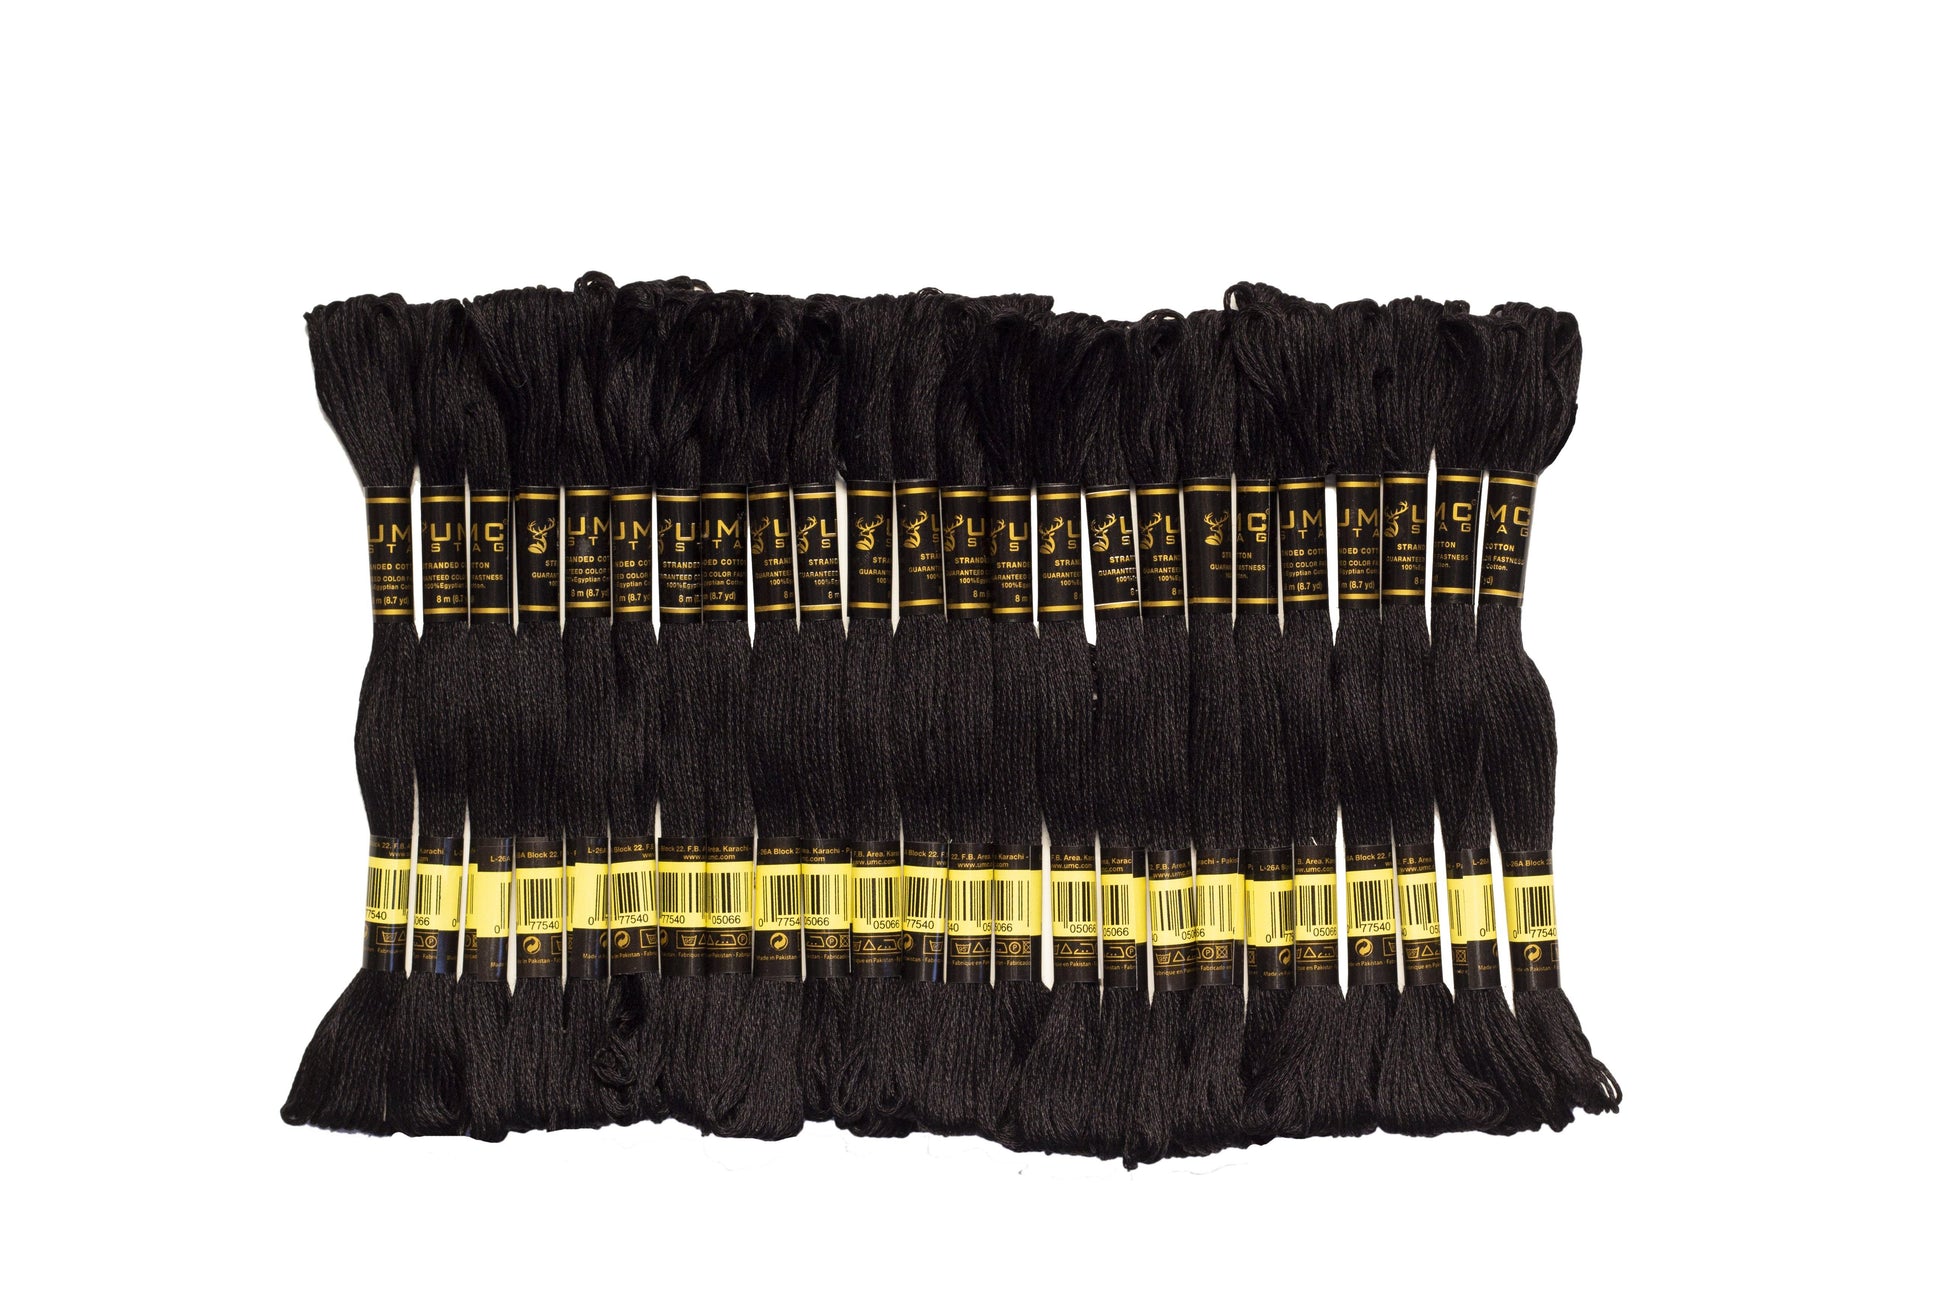 UMC STAG 24 Pieces Black Colour Premium Embroidery Thread